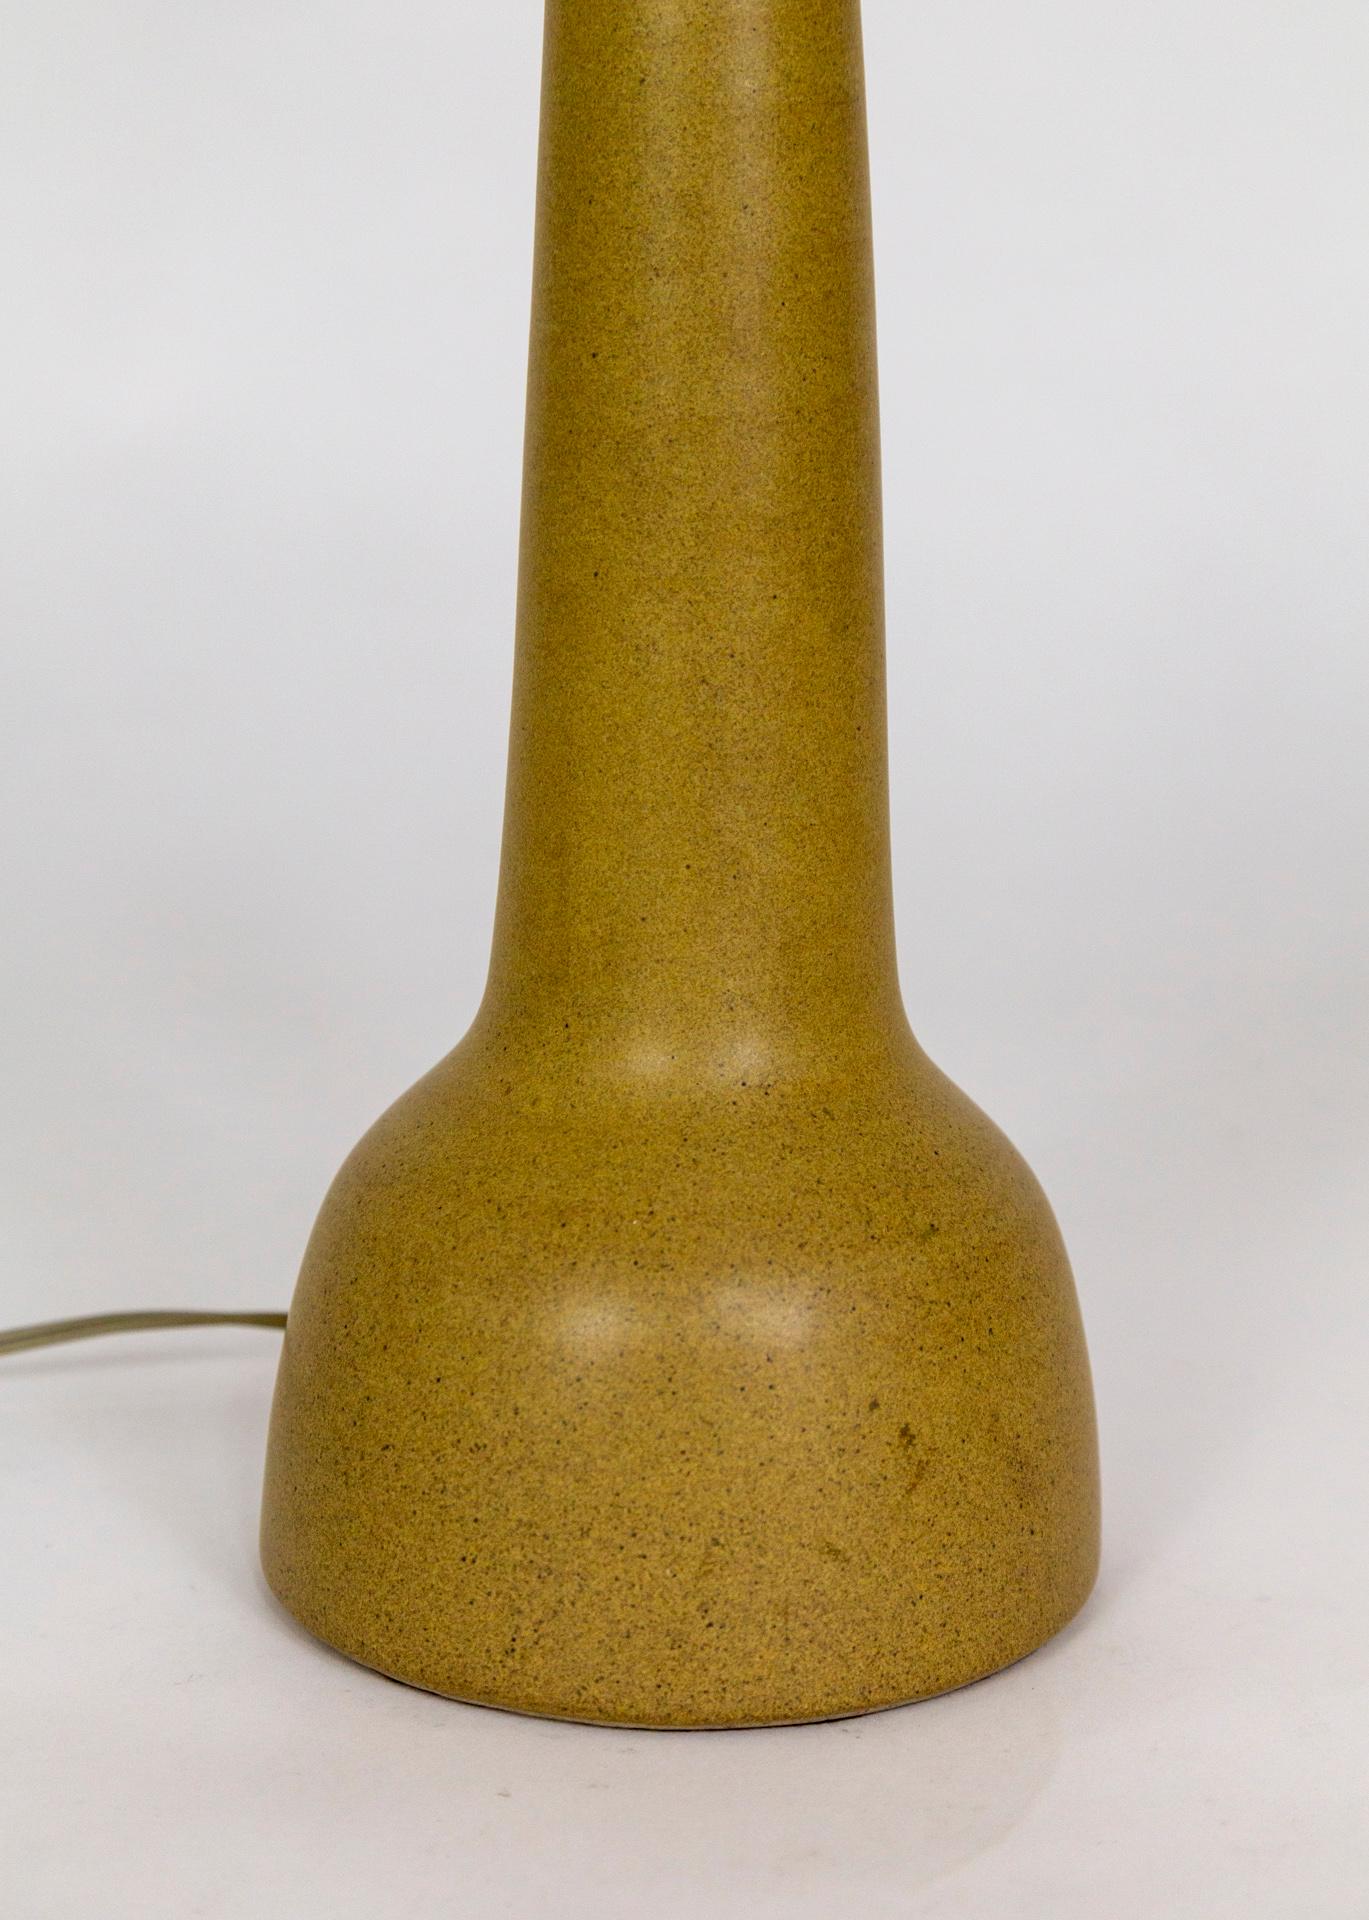 Lampe en céramique épurée, émaillée en camel mat, fabriquée par Marshall Studios et conçue par Jane et Gordon Martz, vers les années 1960. Signé au dos.  5,75